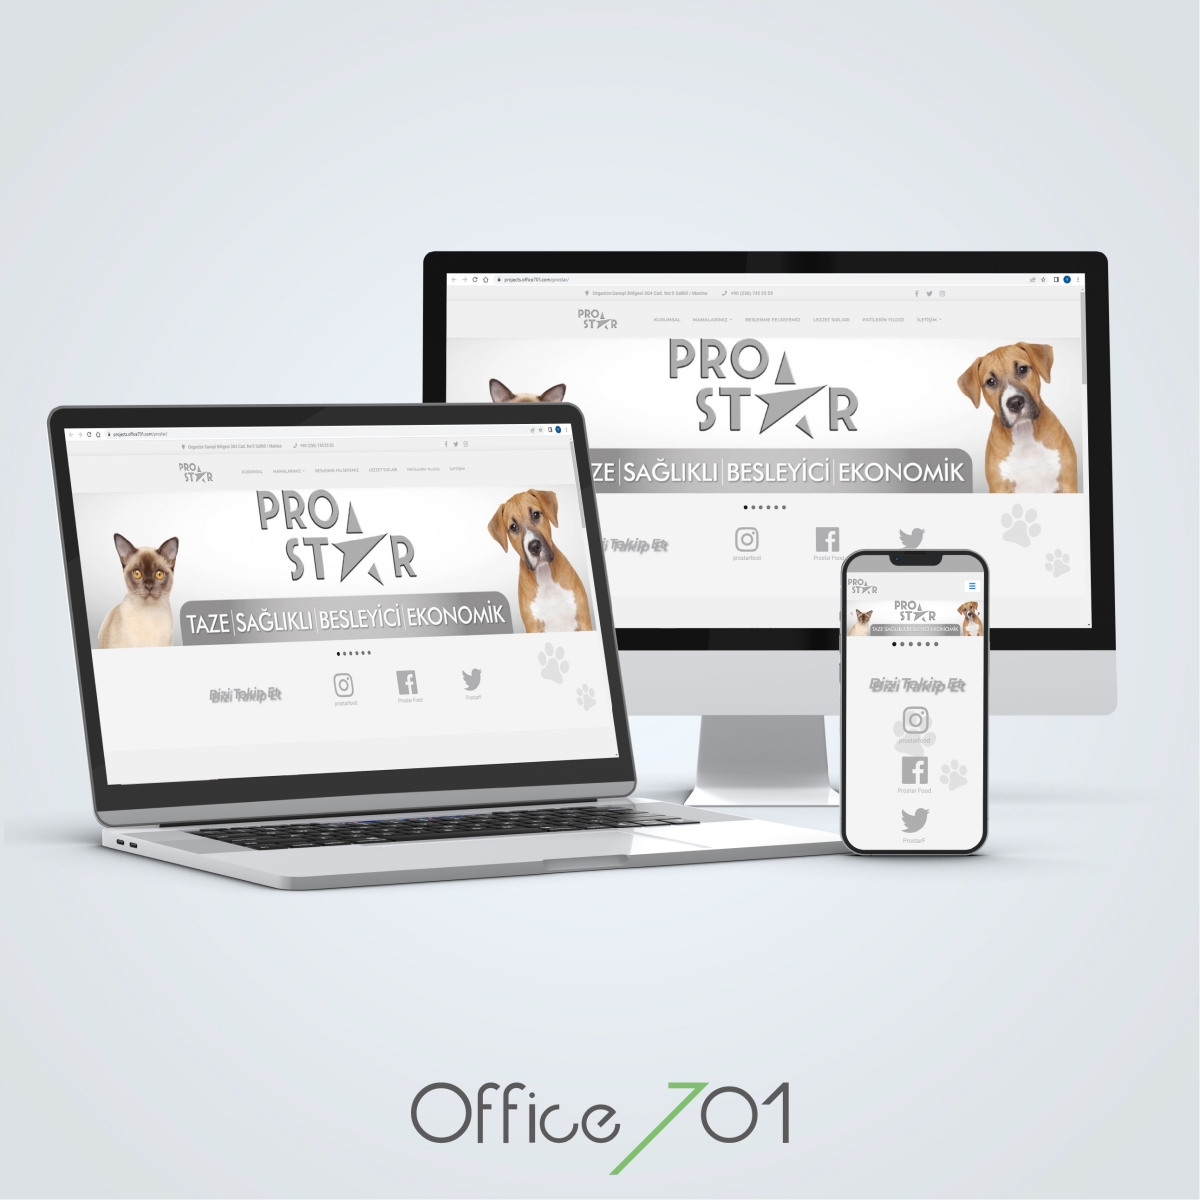 Office701 | Prostar Web Sitesi